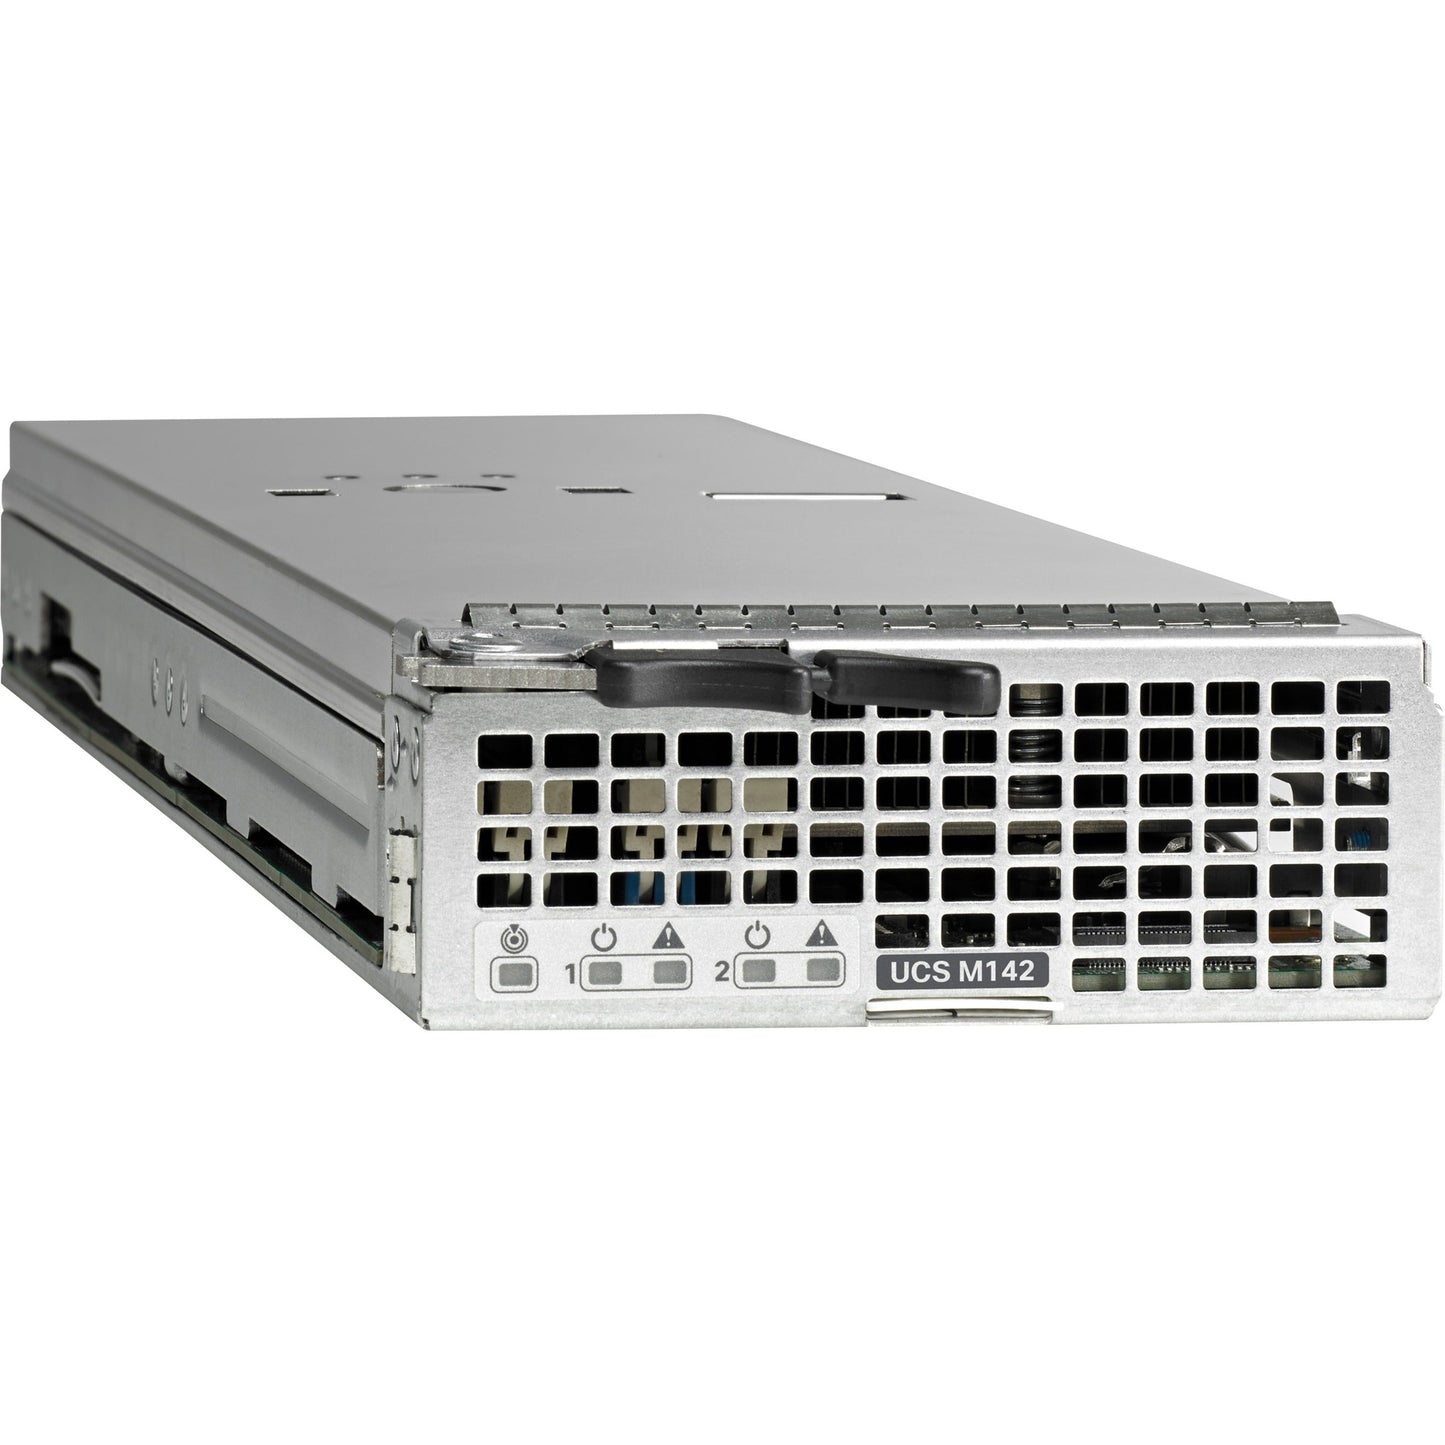 Cisco M142 Server - 2 2.70 GHz - 64 GB RAM - Serial ATA Serial Attached SCSI (SAS) Controller